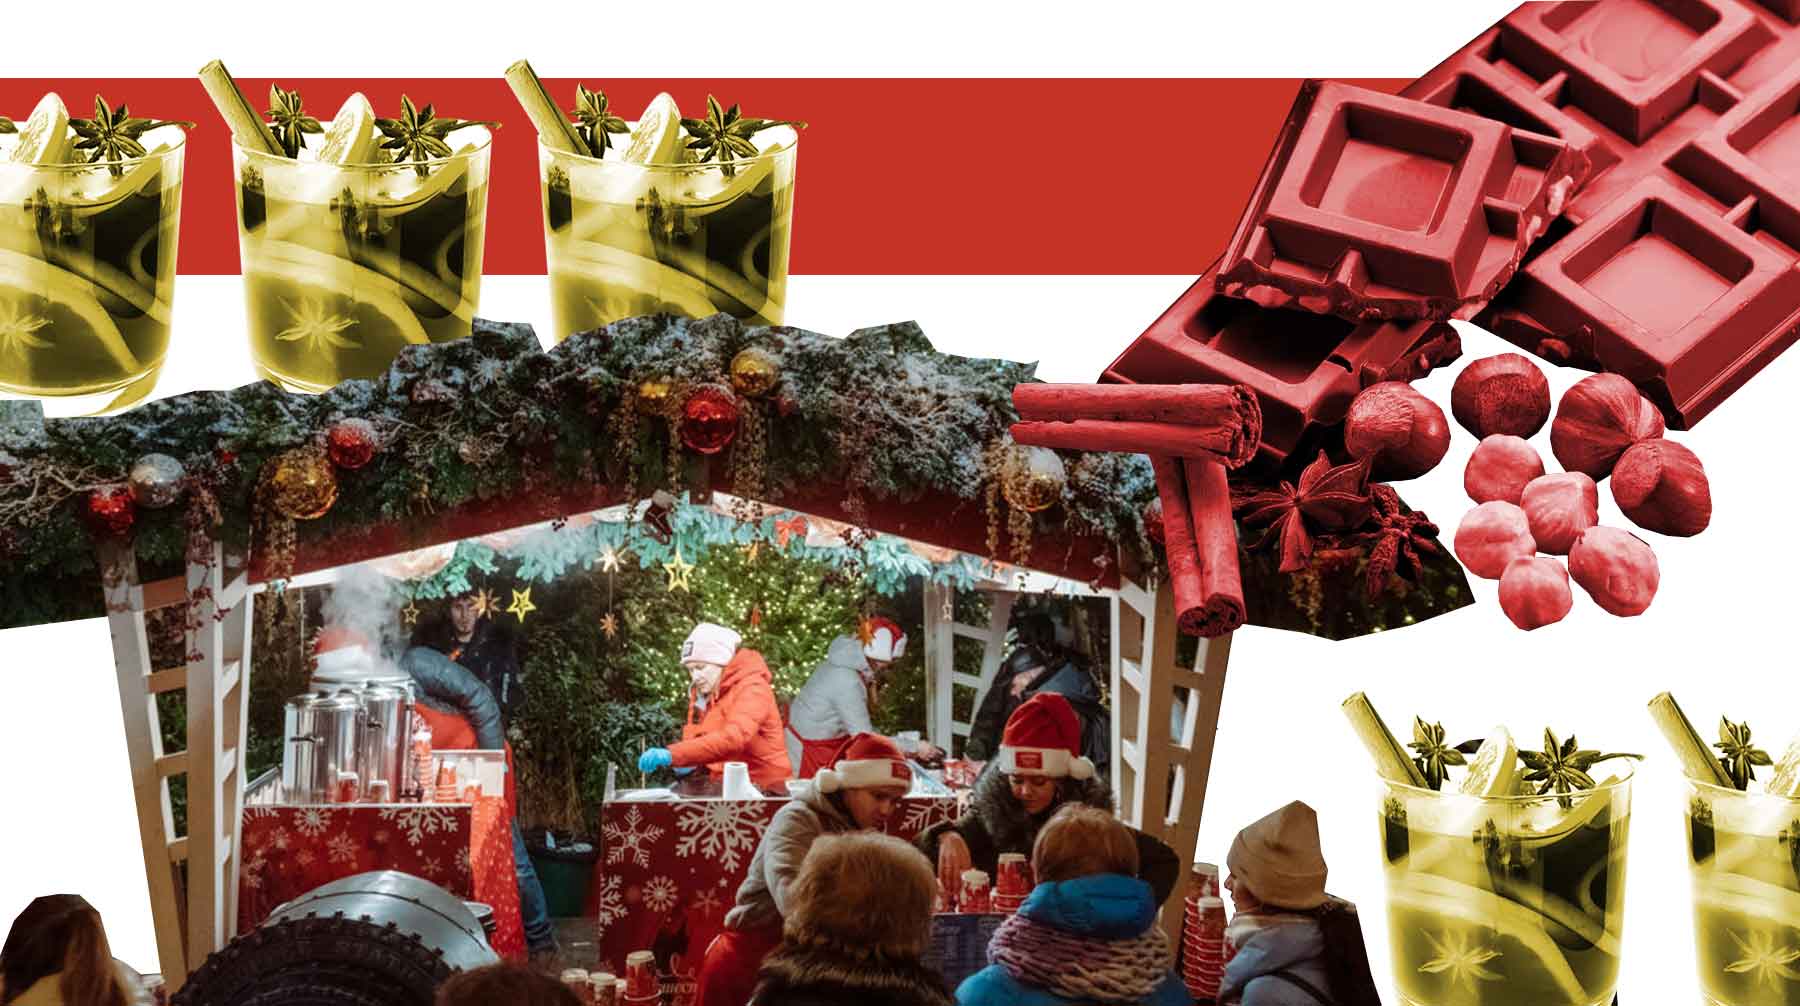 Daily Storm рассказывает о самых вкусных угощениях фестиваля «Путешествие в Рождество» стоимостью до 350 рублей Коллаж: © Daily Storm